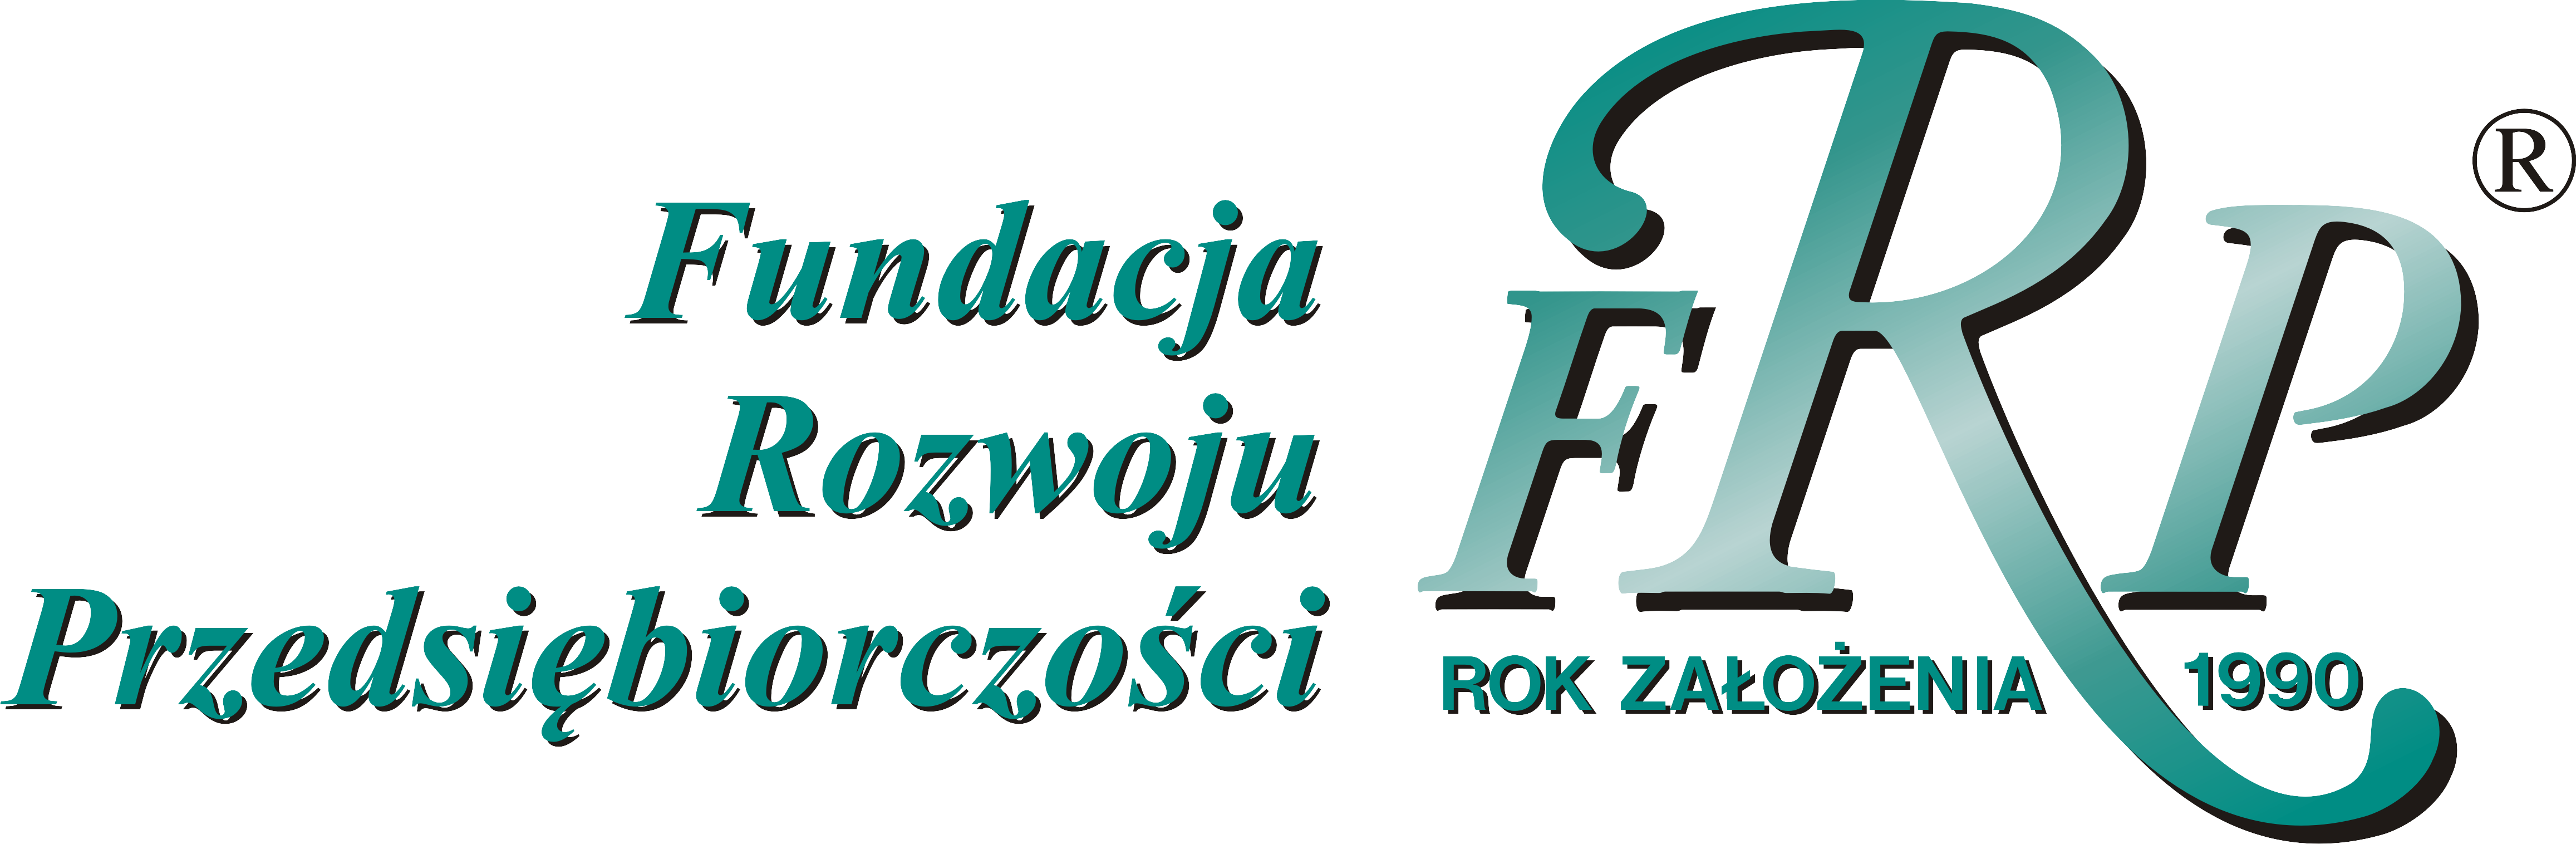 Logo Fundacja Rozwoju Przedsiębiorczości im. Prof. Jerzego Dietla